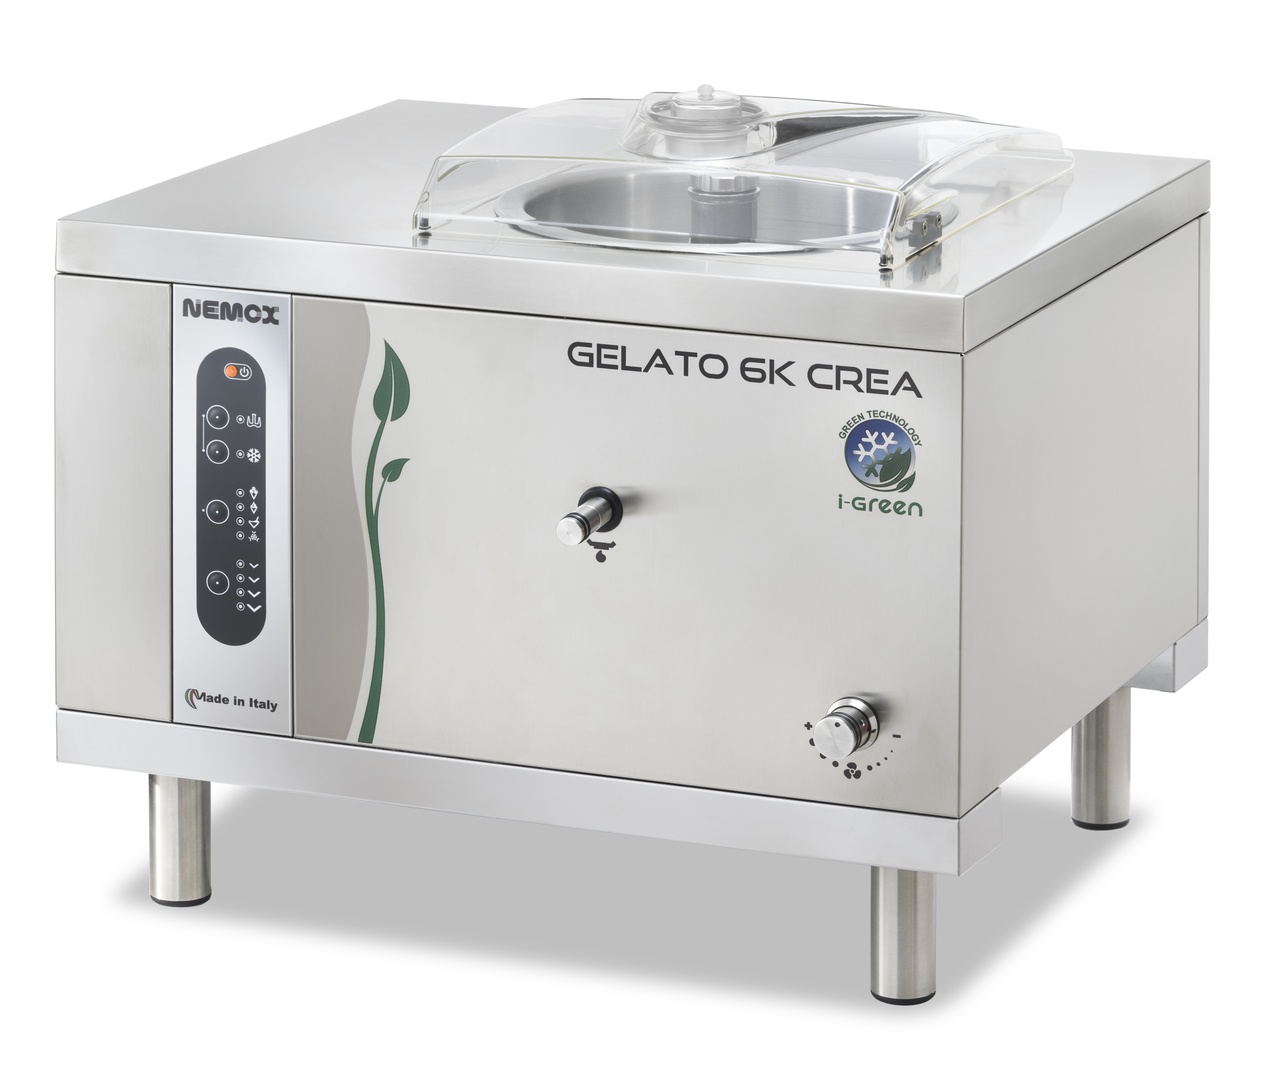 Первое дополнительное изображение для товара Профессиональный фризер для мороженого Nemox Gelato 6K Crea i-Green (чаша 5л)